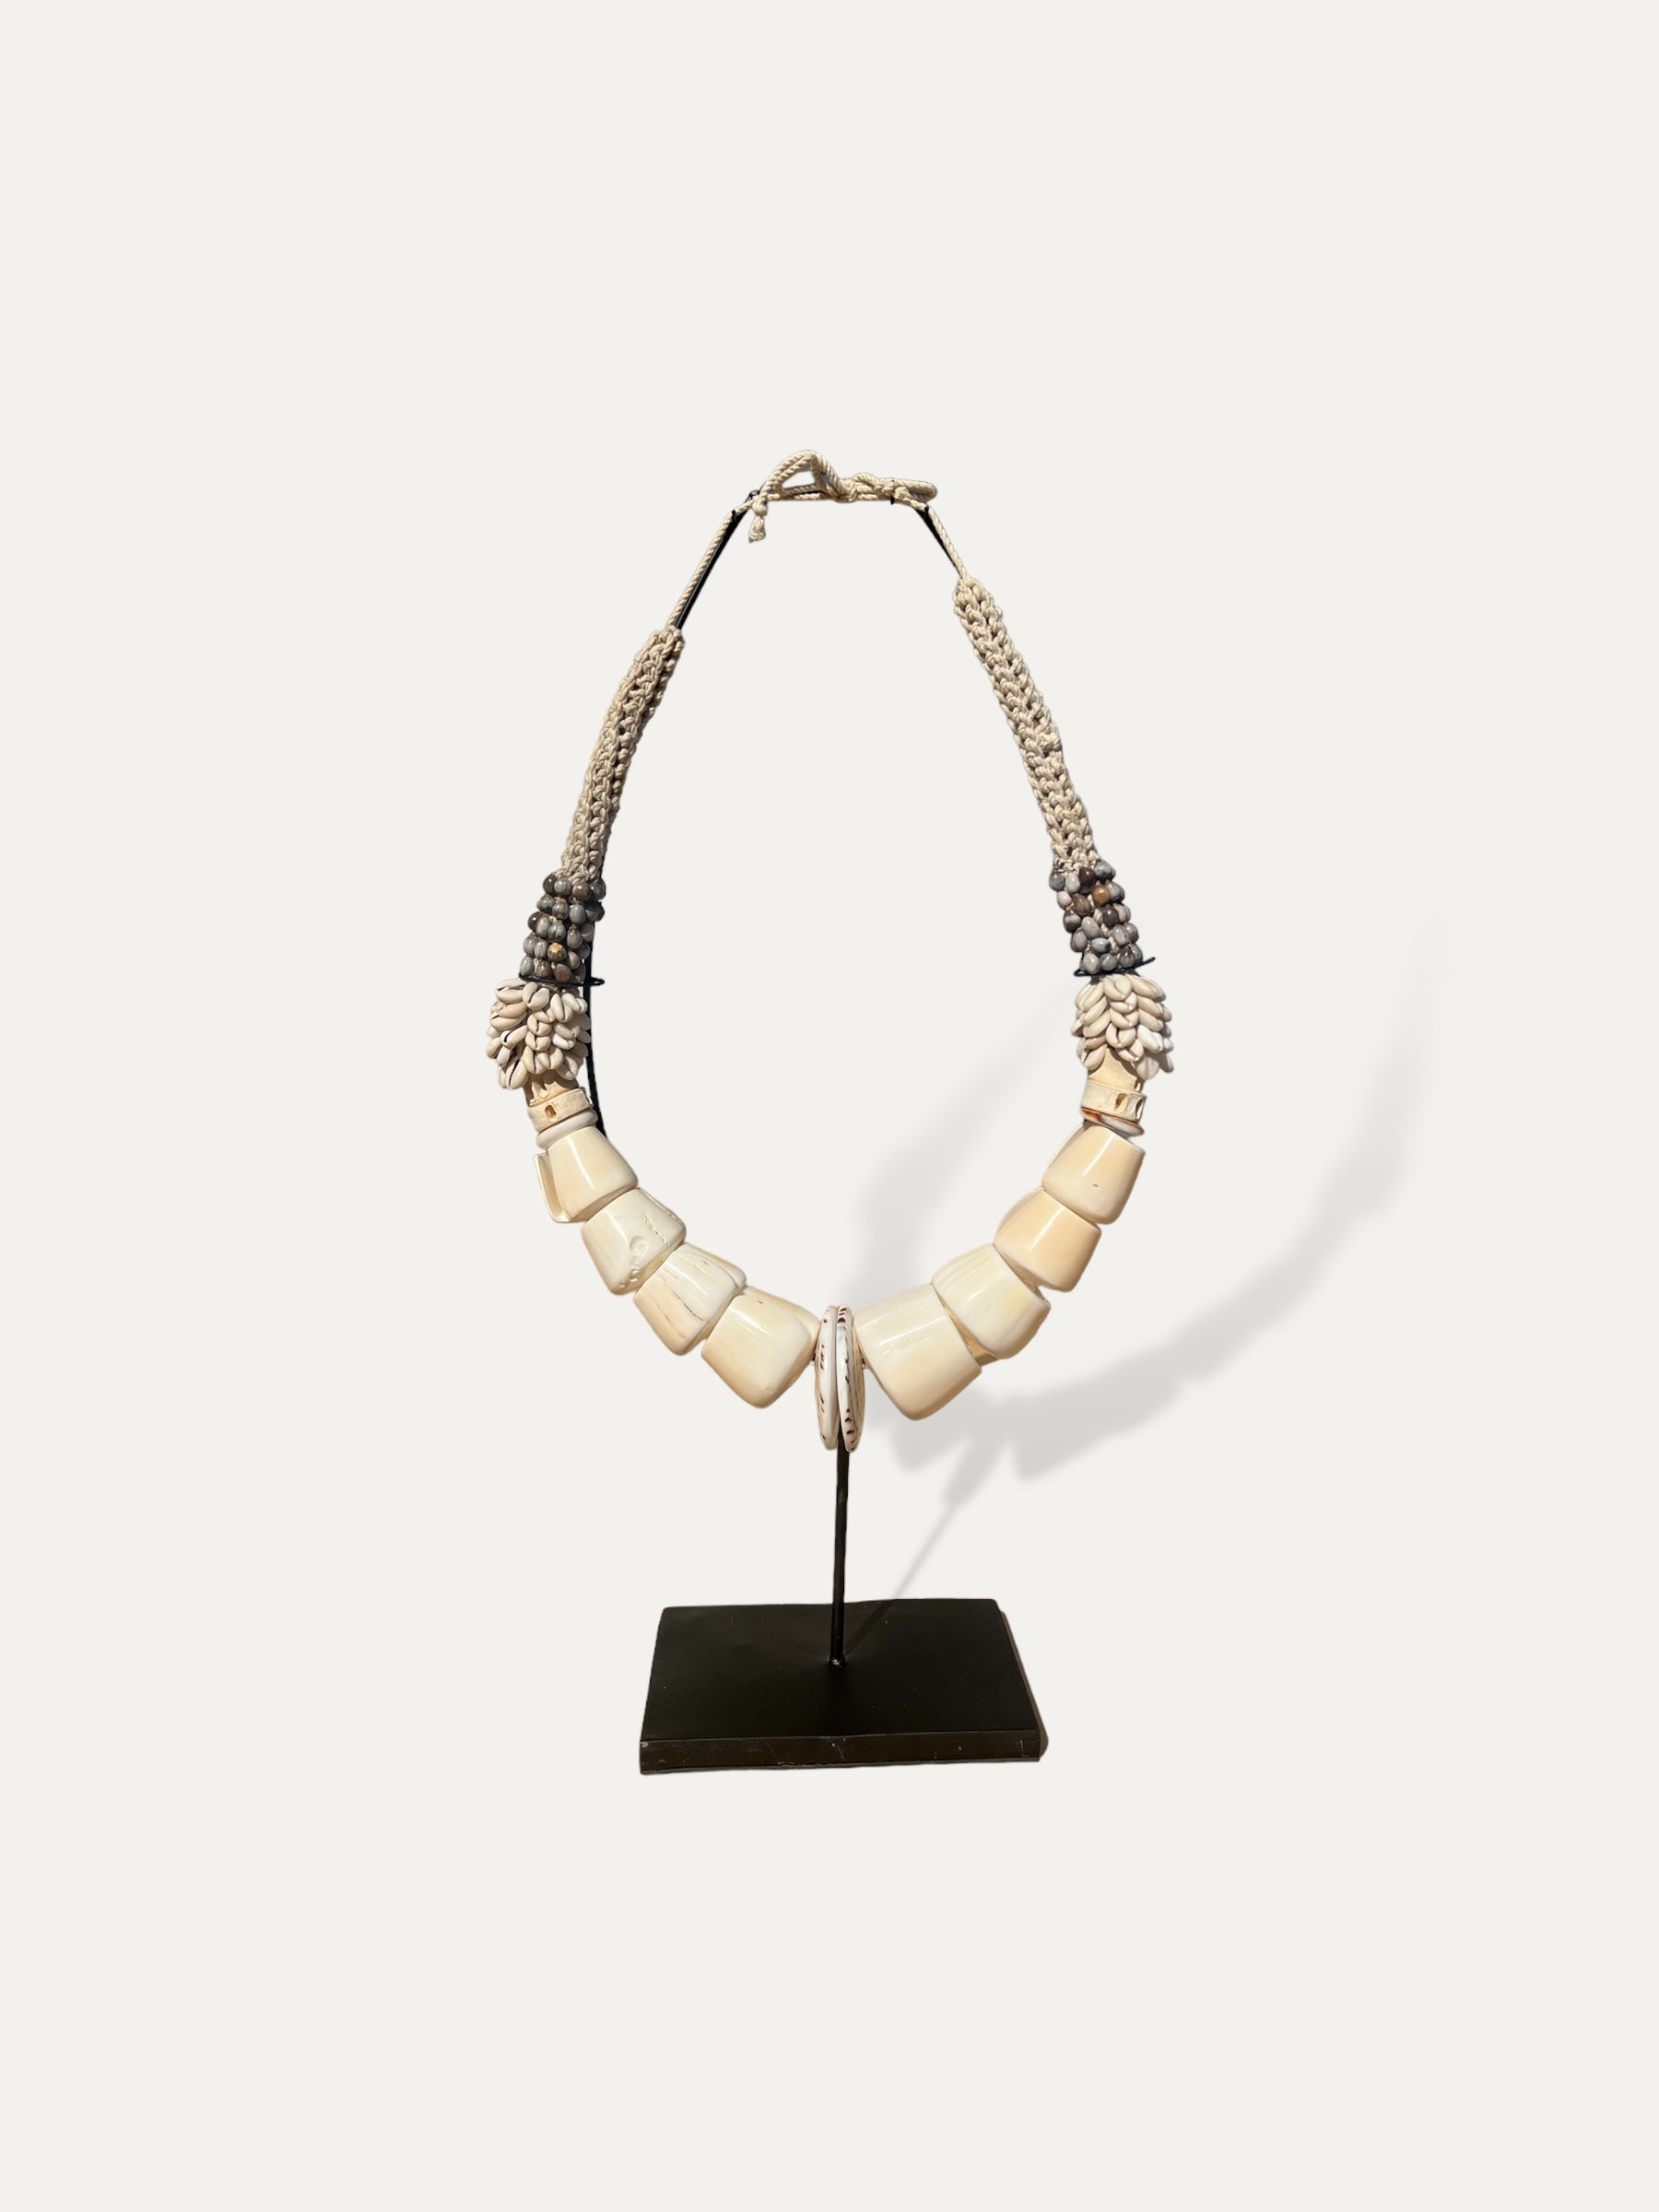 COKOHA collier décoratif sur socle - Aman